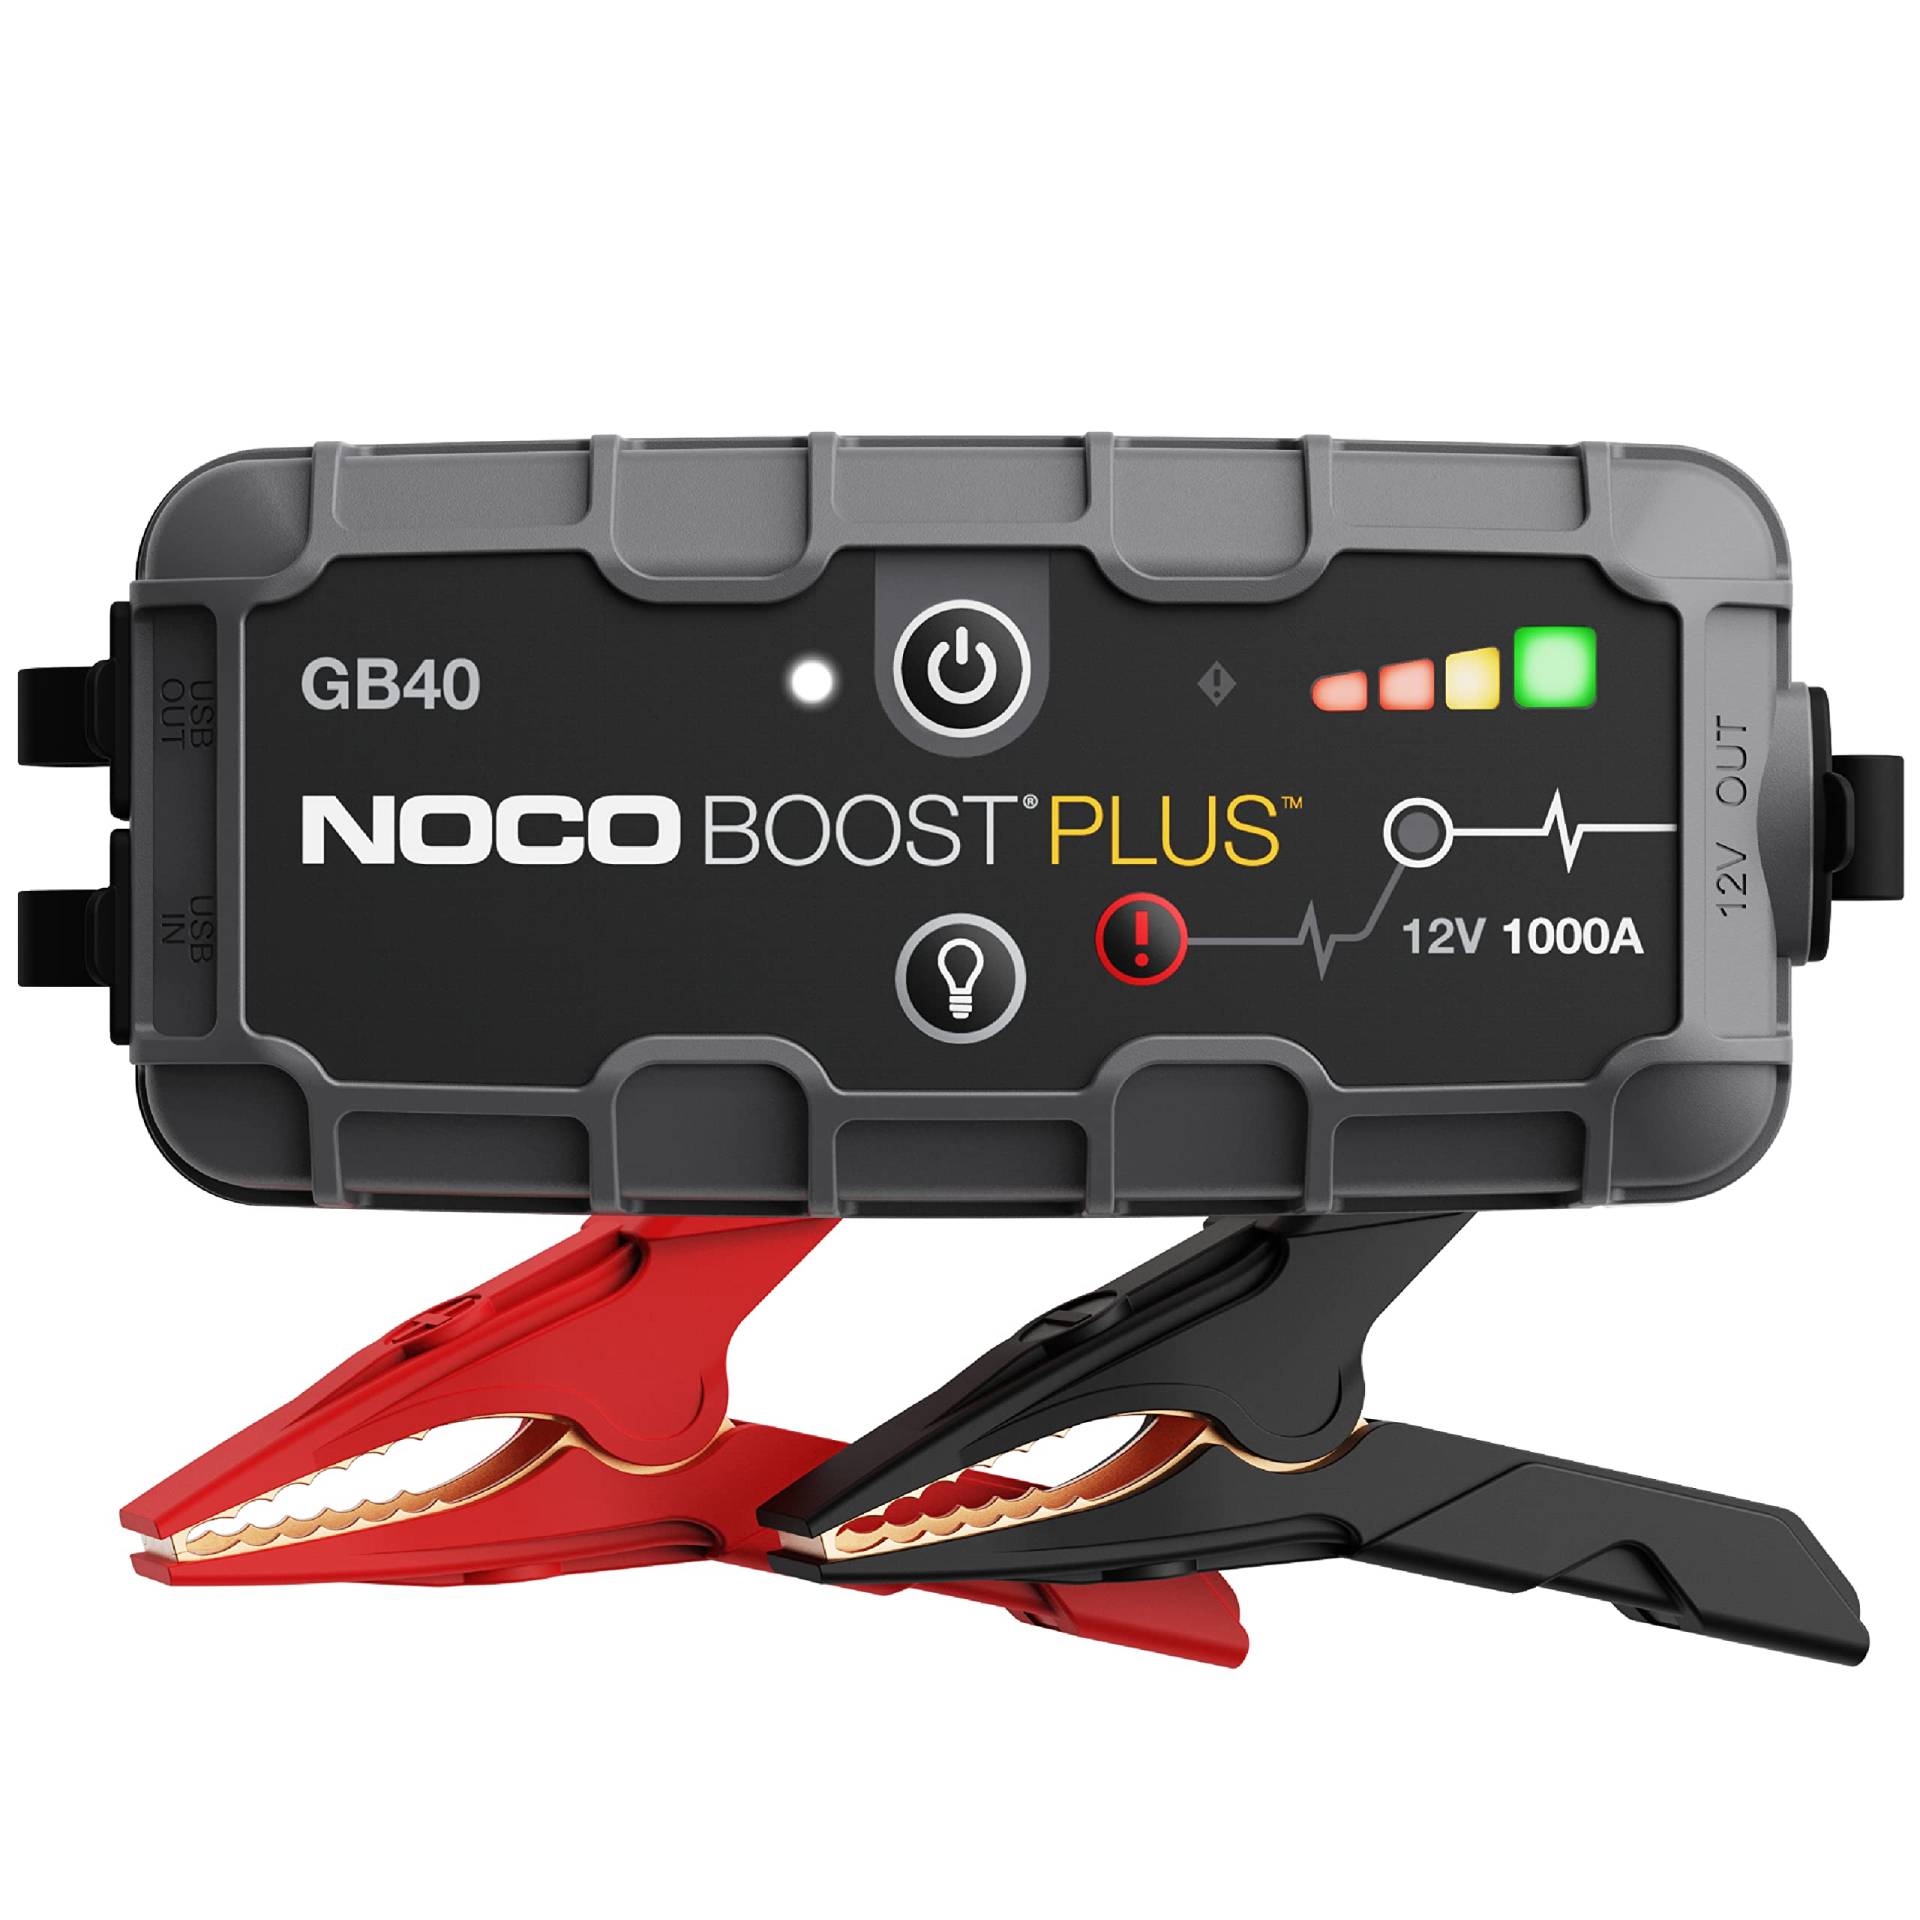 NOCO Boost Plus GB40 1000A 12V UltraSafe Starthilfe Powerbank, Auto Batterie Booster, Tragbare USB Ladegerät, Starthilfekabel und Überbrückungskabel für bis zu 6,0L Benzin und 3,0L Dieselmotoren von NOCO